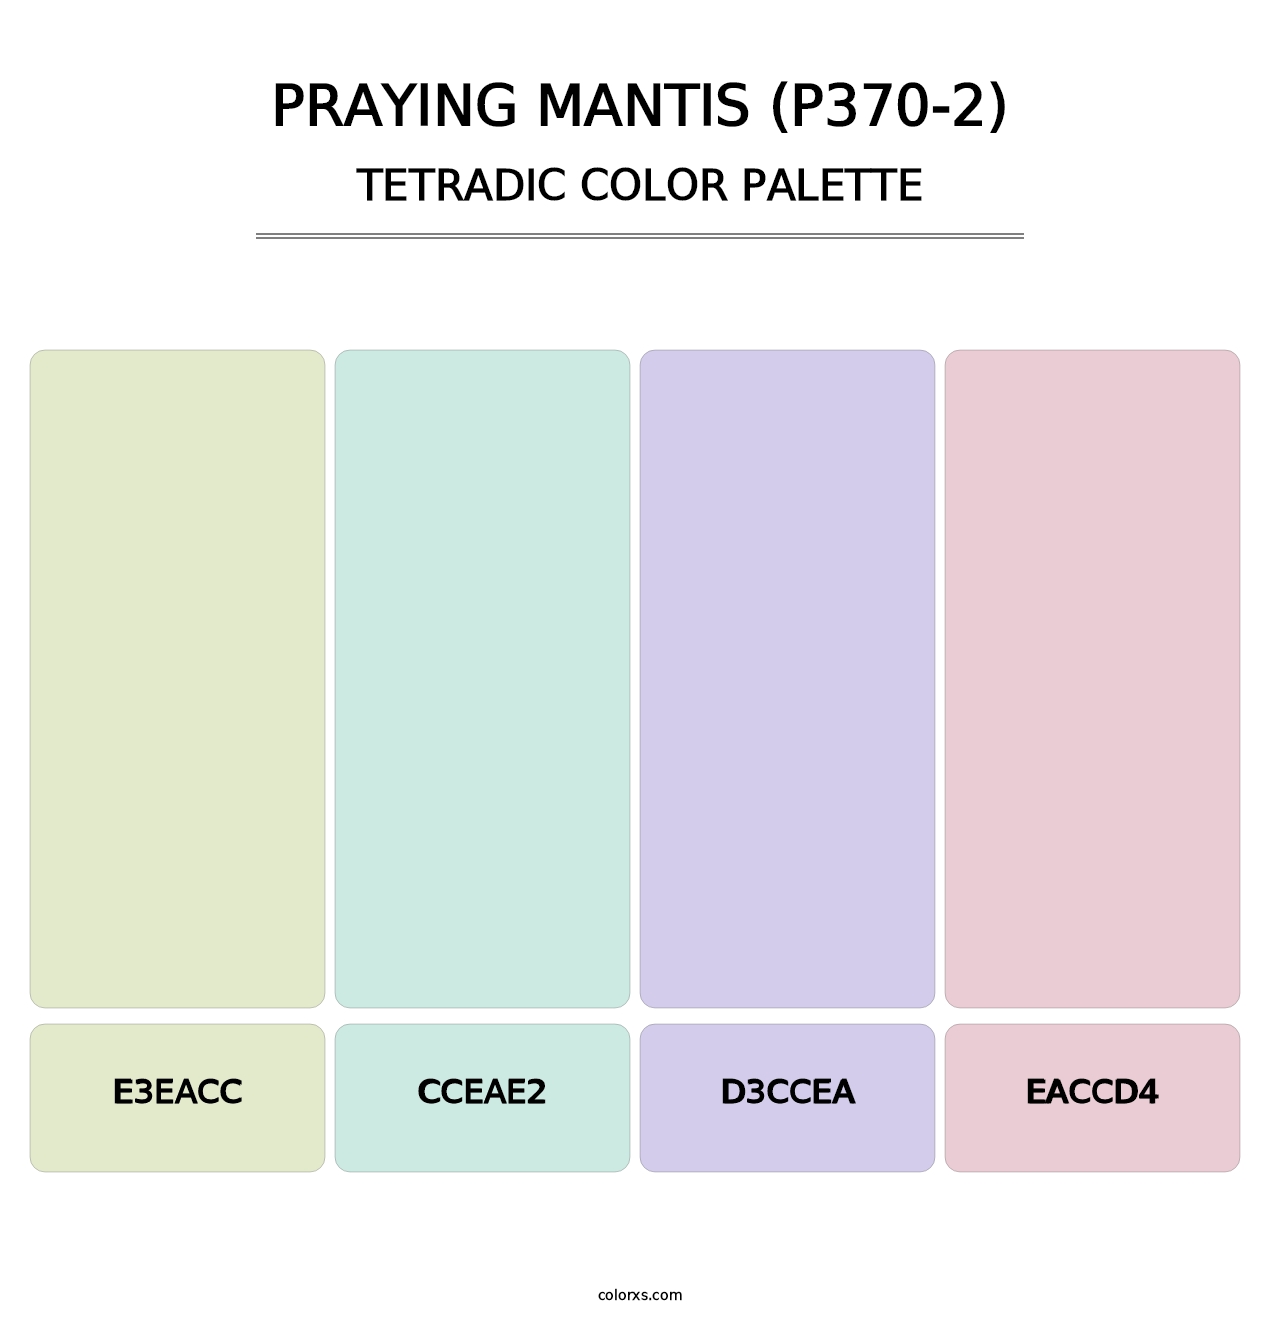 Praying Mantis (P370-2) - Tetradic Color Palette